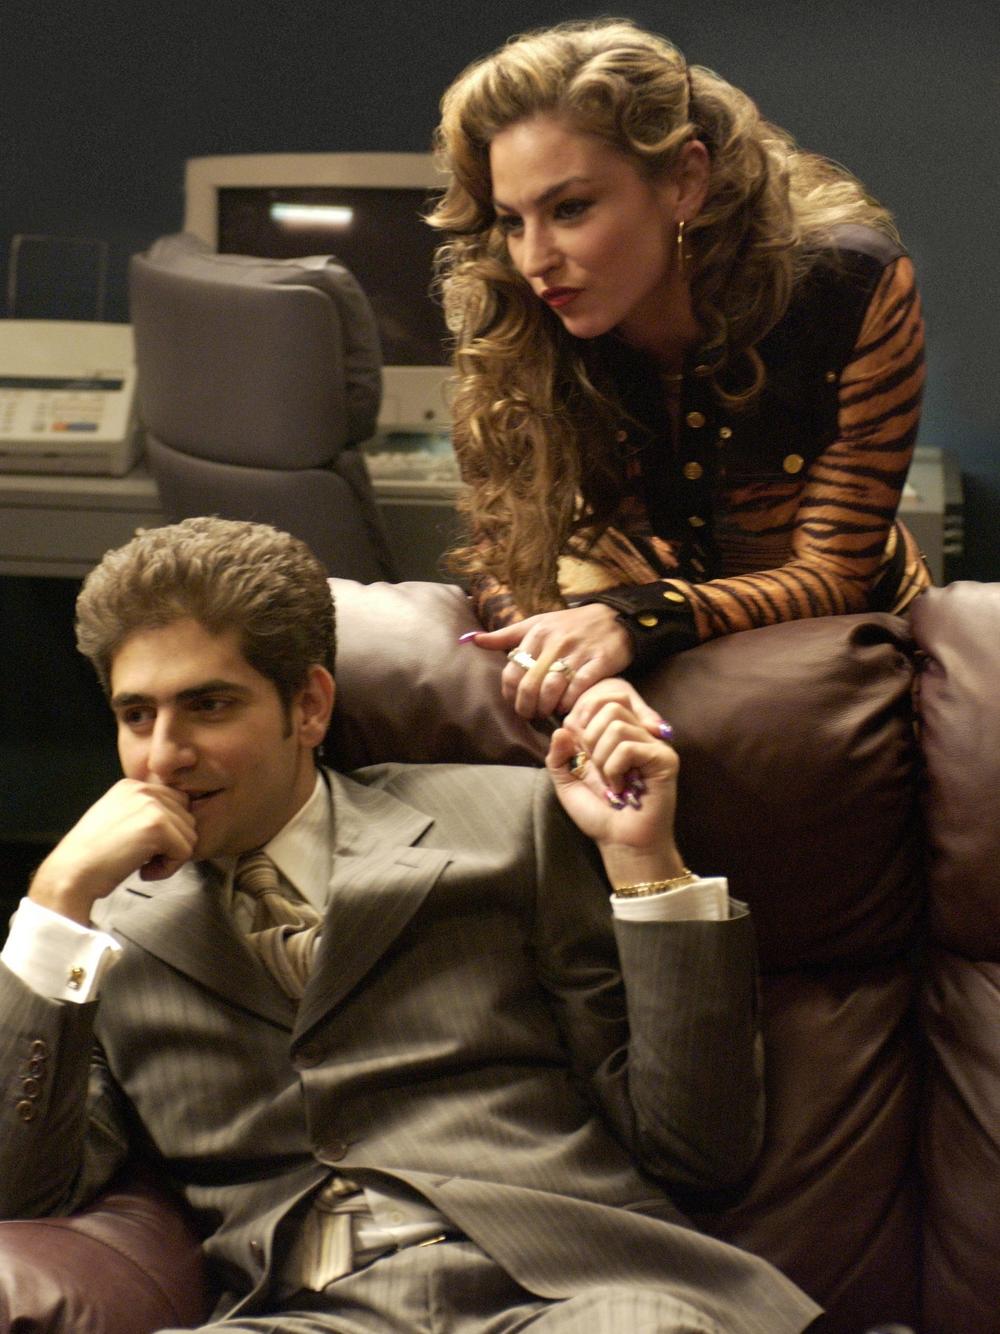 Imperioli alongside his <em>Sopranos</em> co-star, Drea de Matteo, who plays his girlfriend Adriana.